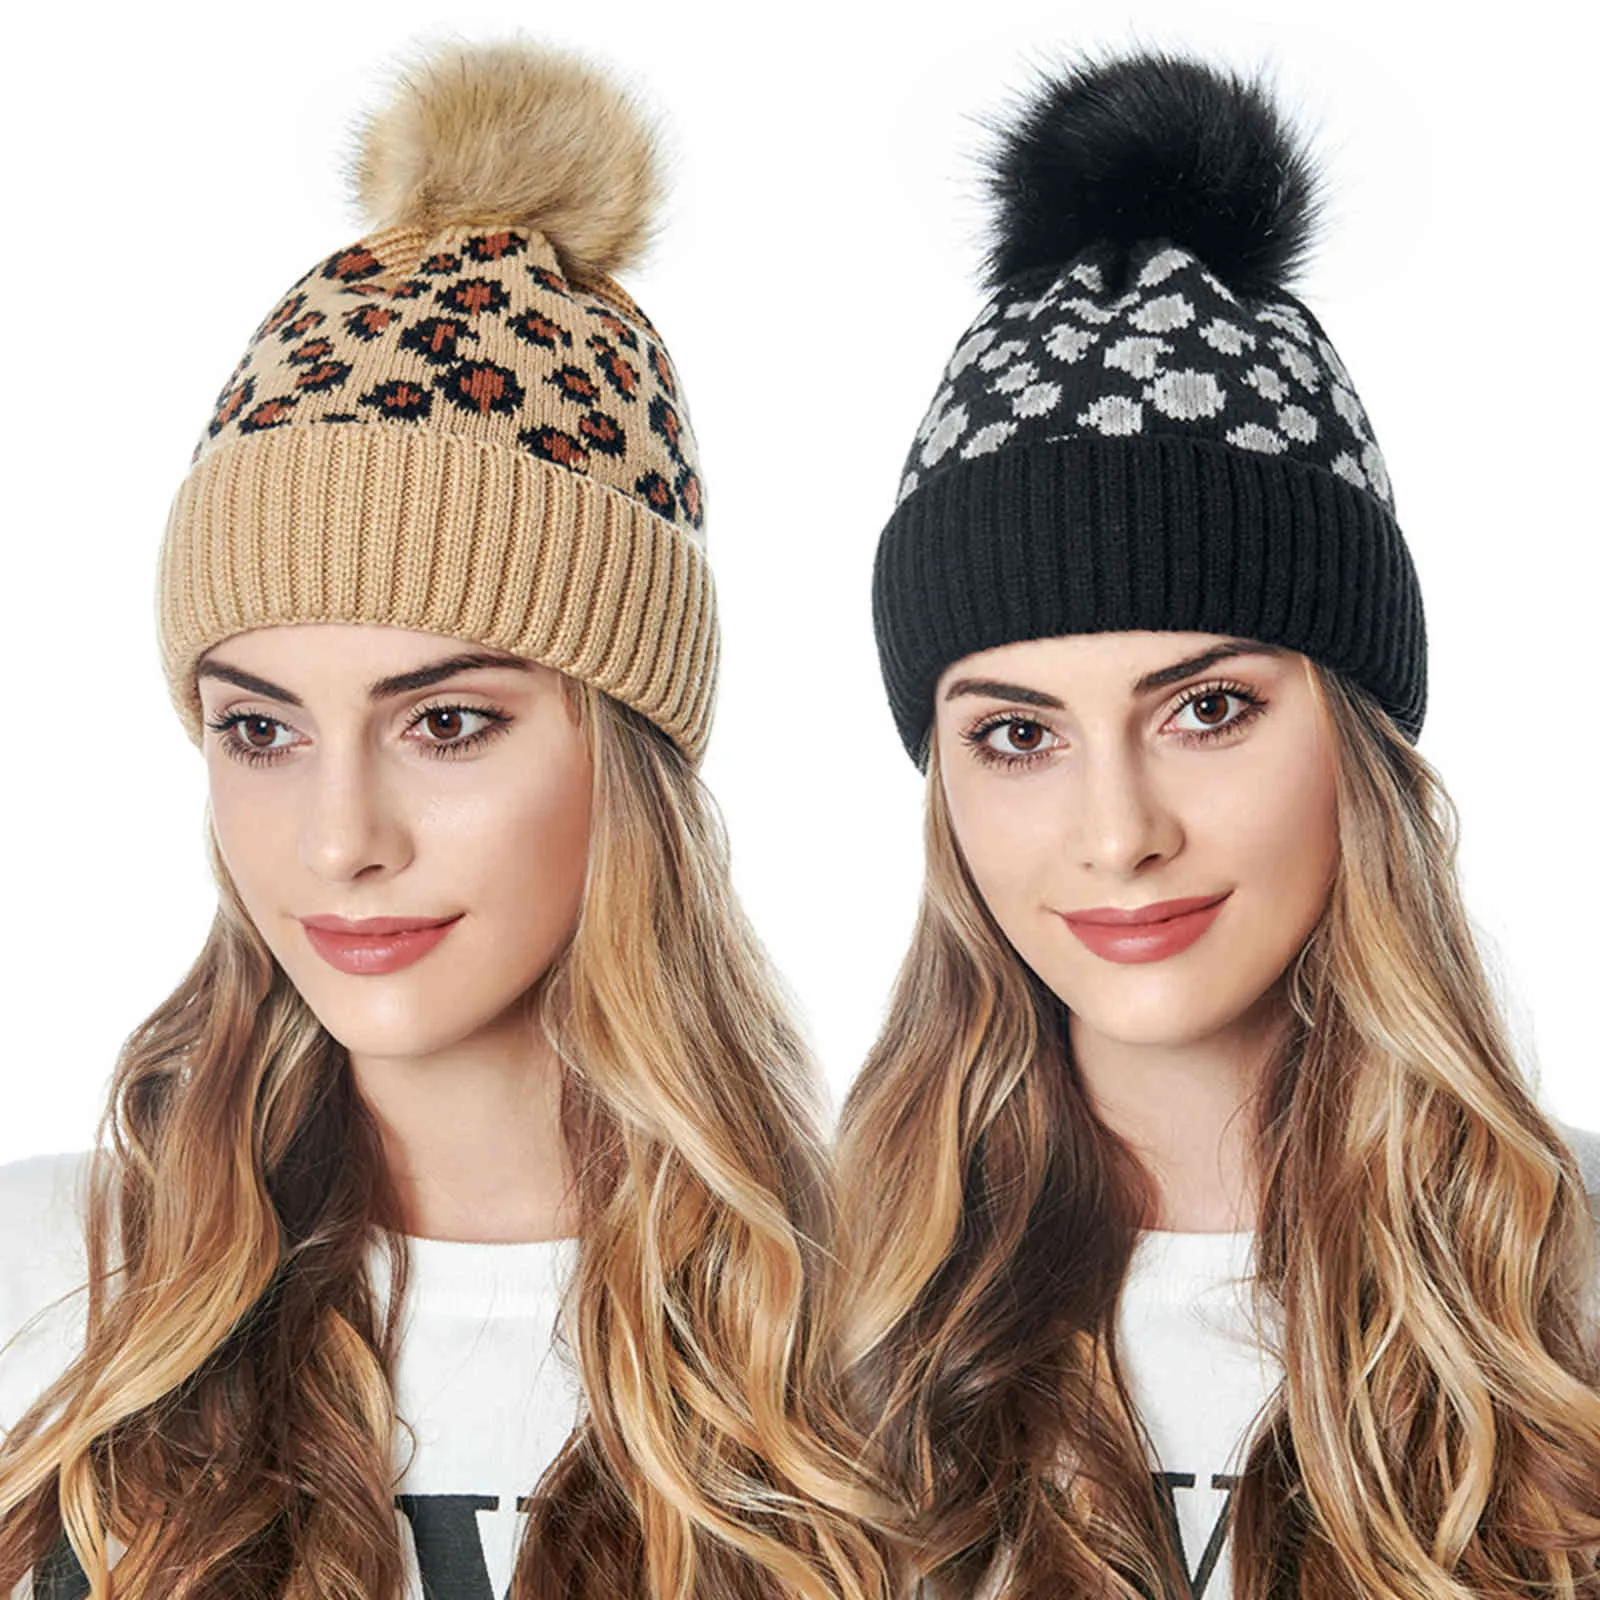 Produit à la mode tricot de mode femme chapeau hiver en stock chapeaux d'hiver de Noël pour femmes